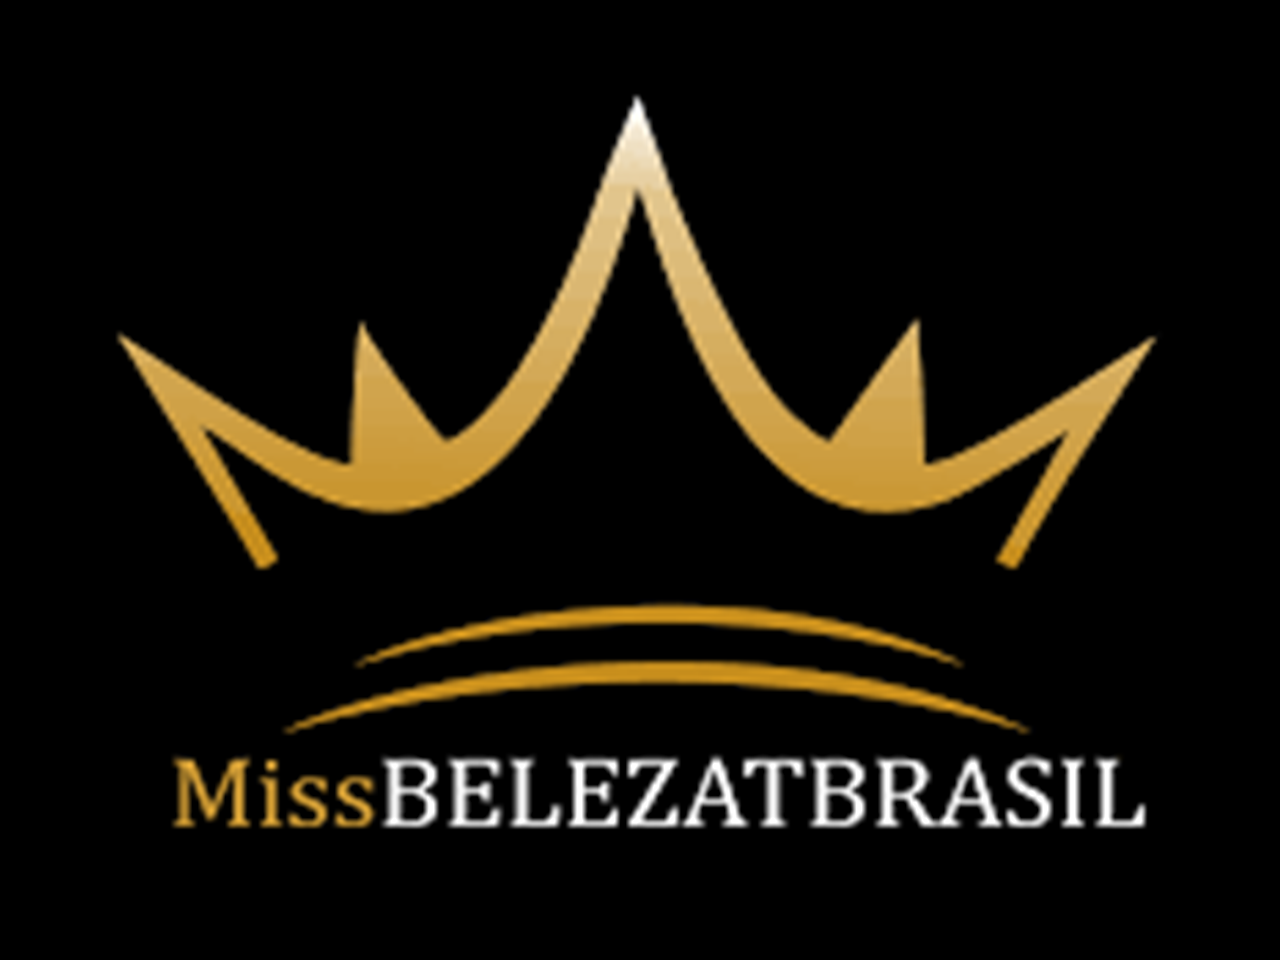 Miss Beleza T Brasil